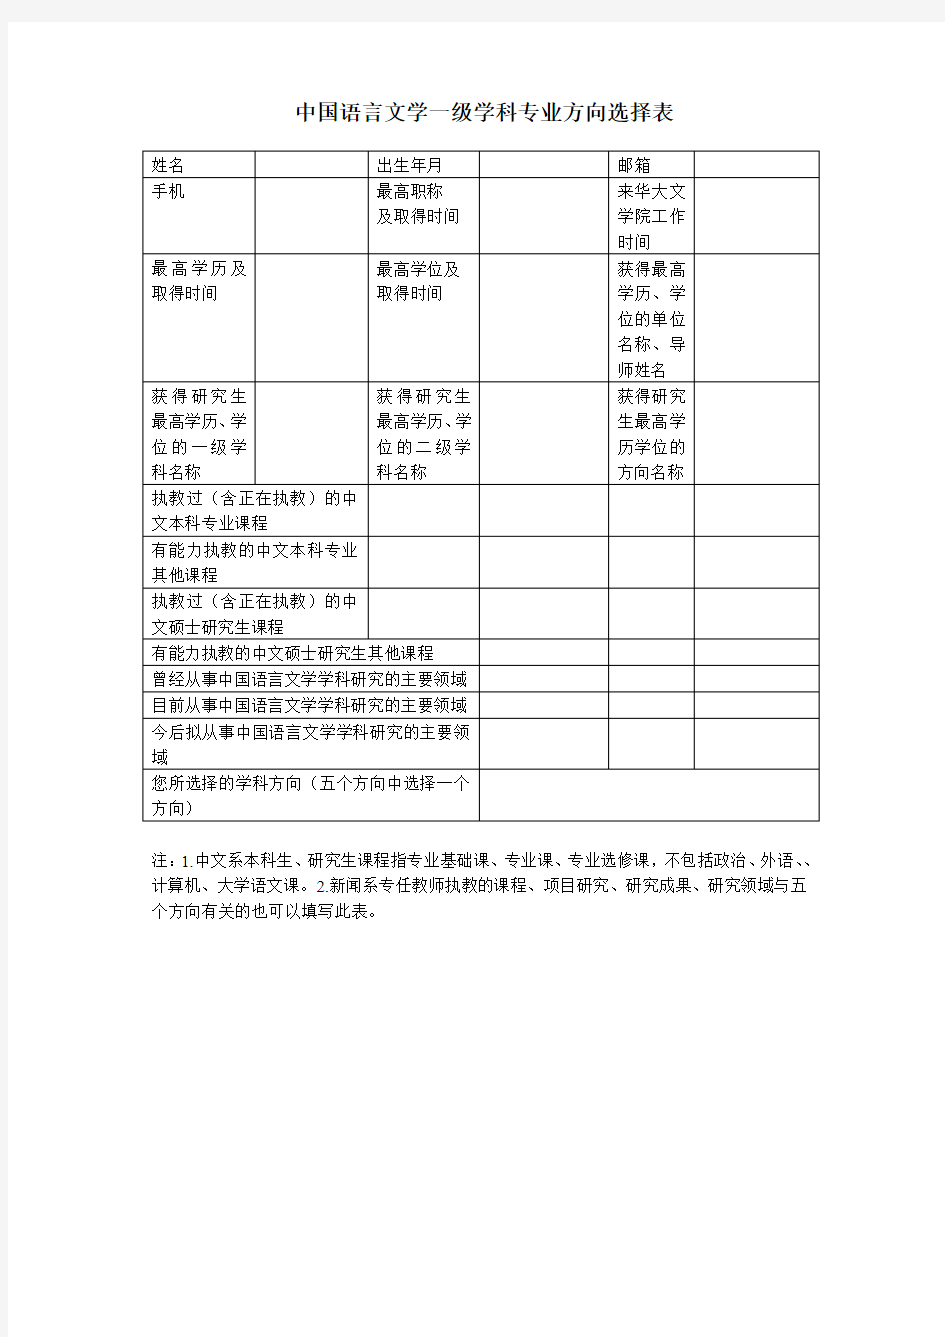 中国语言文学一级学科专业方向选择表-华侨大学文学院